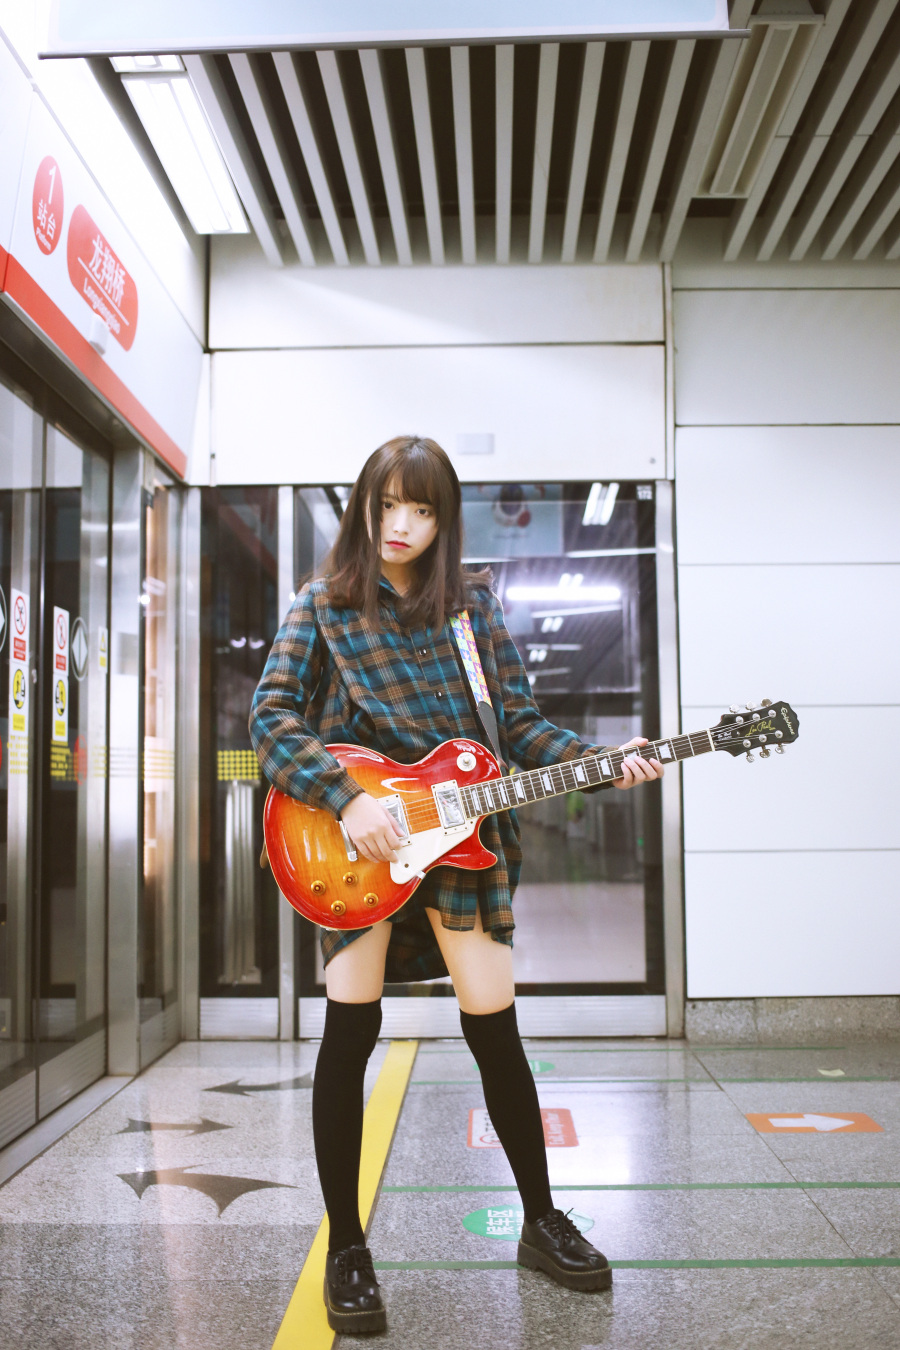 地铁里的摇滚少女|人像|摄影|念念落安 - 原创设